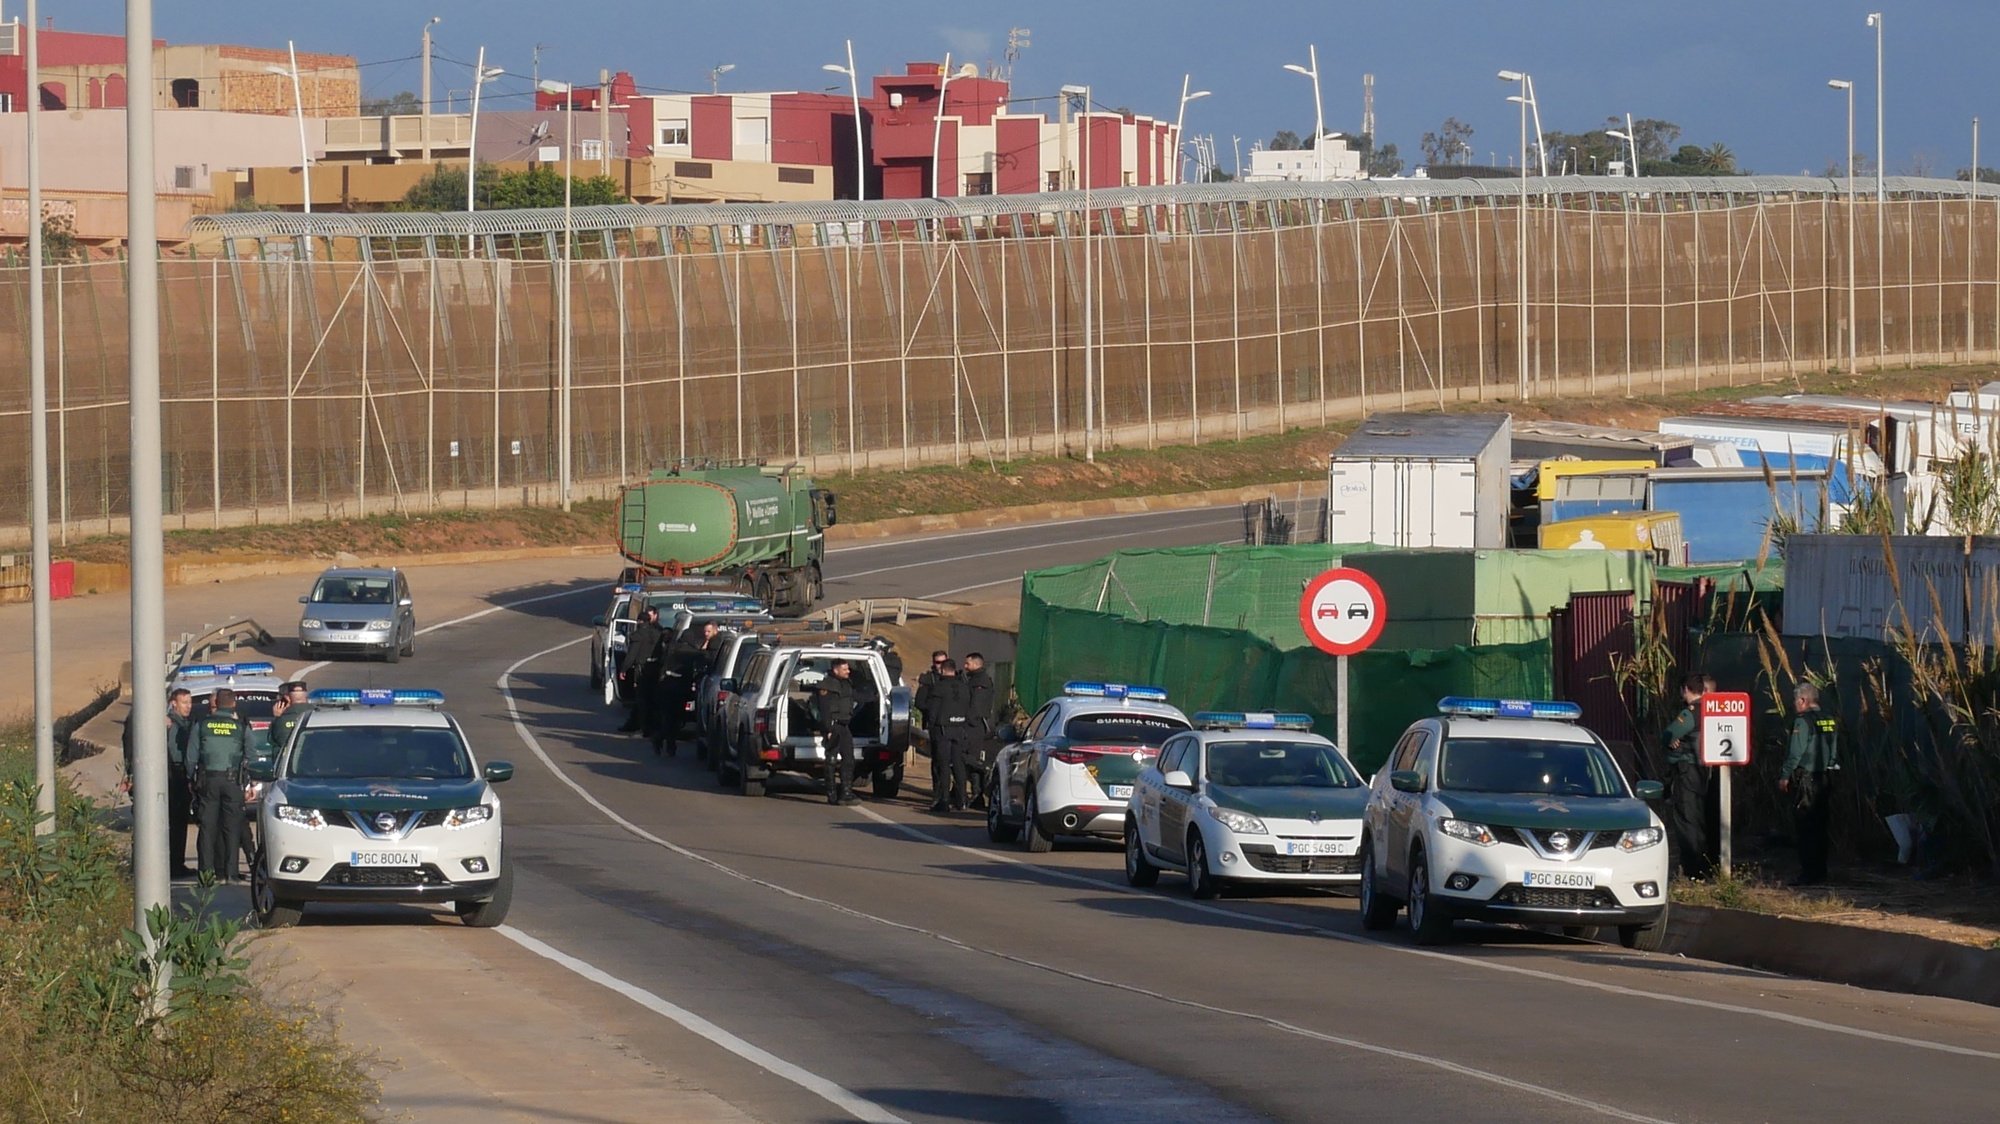 Migrantes tentaram entrar em Melilla, mas foram impedidos por membros da polícia espanhola